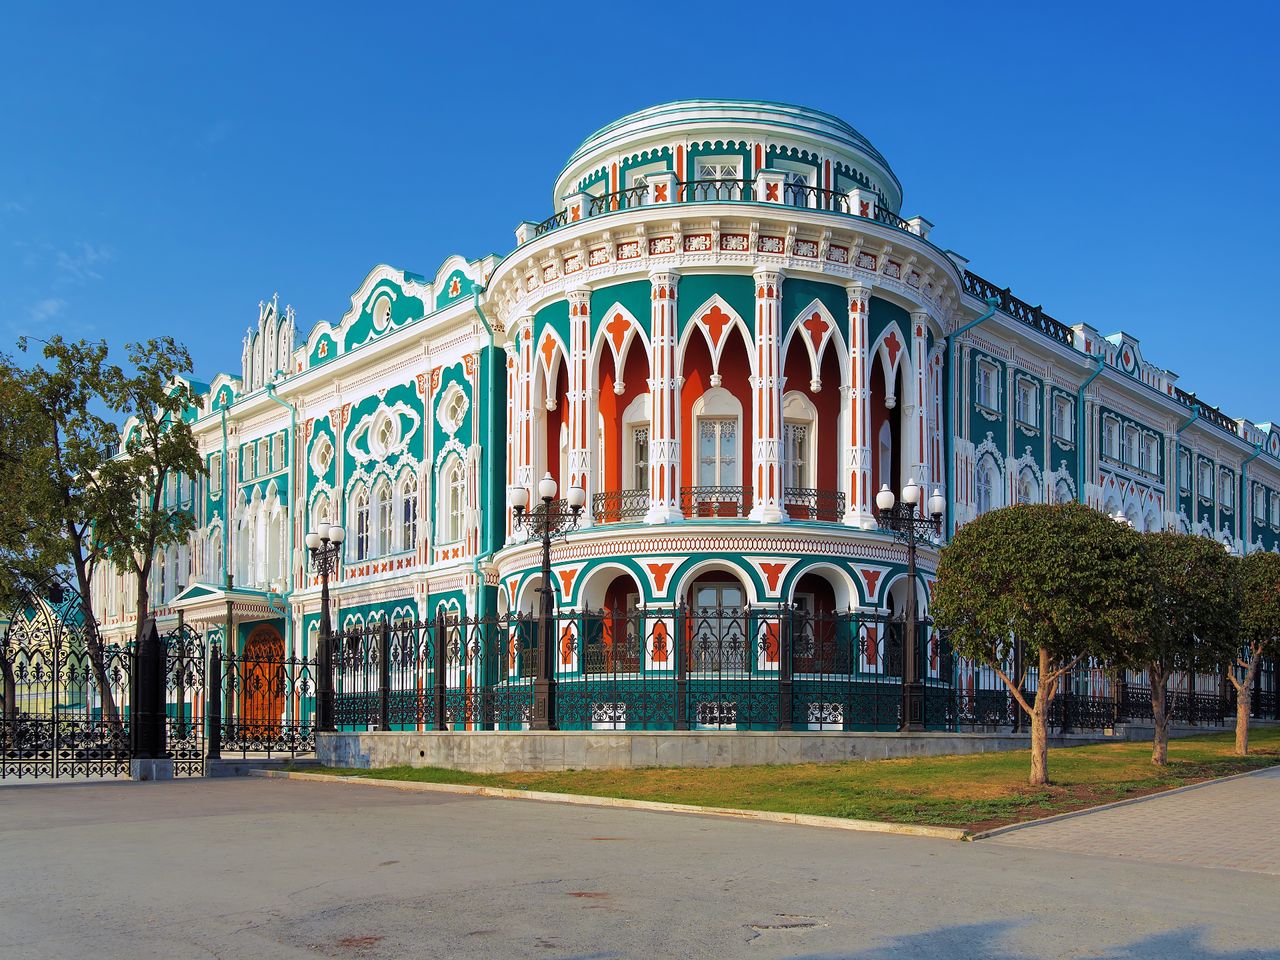 Екатеринбург купеческий | Цена 5400₽, отзывы, описание экскурсии